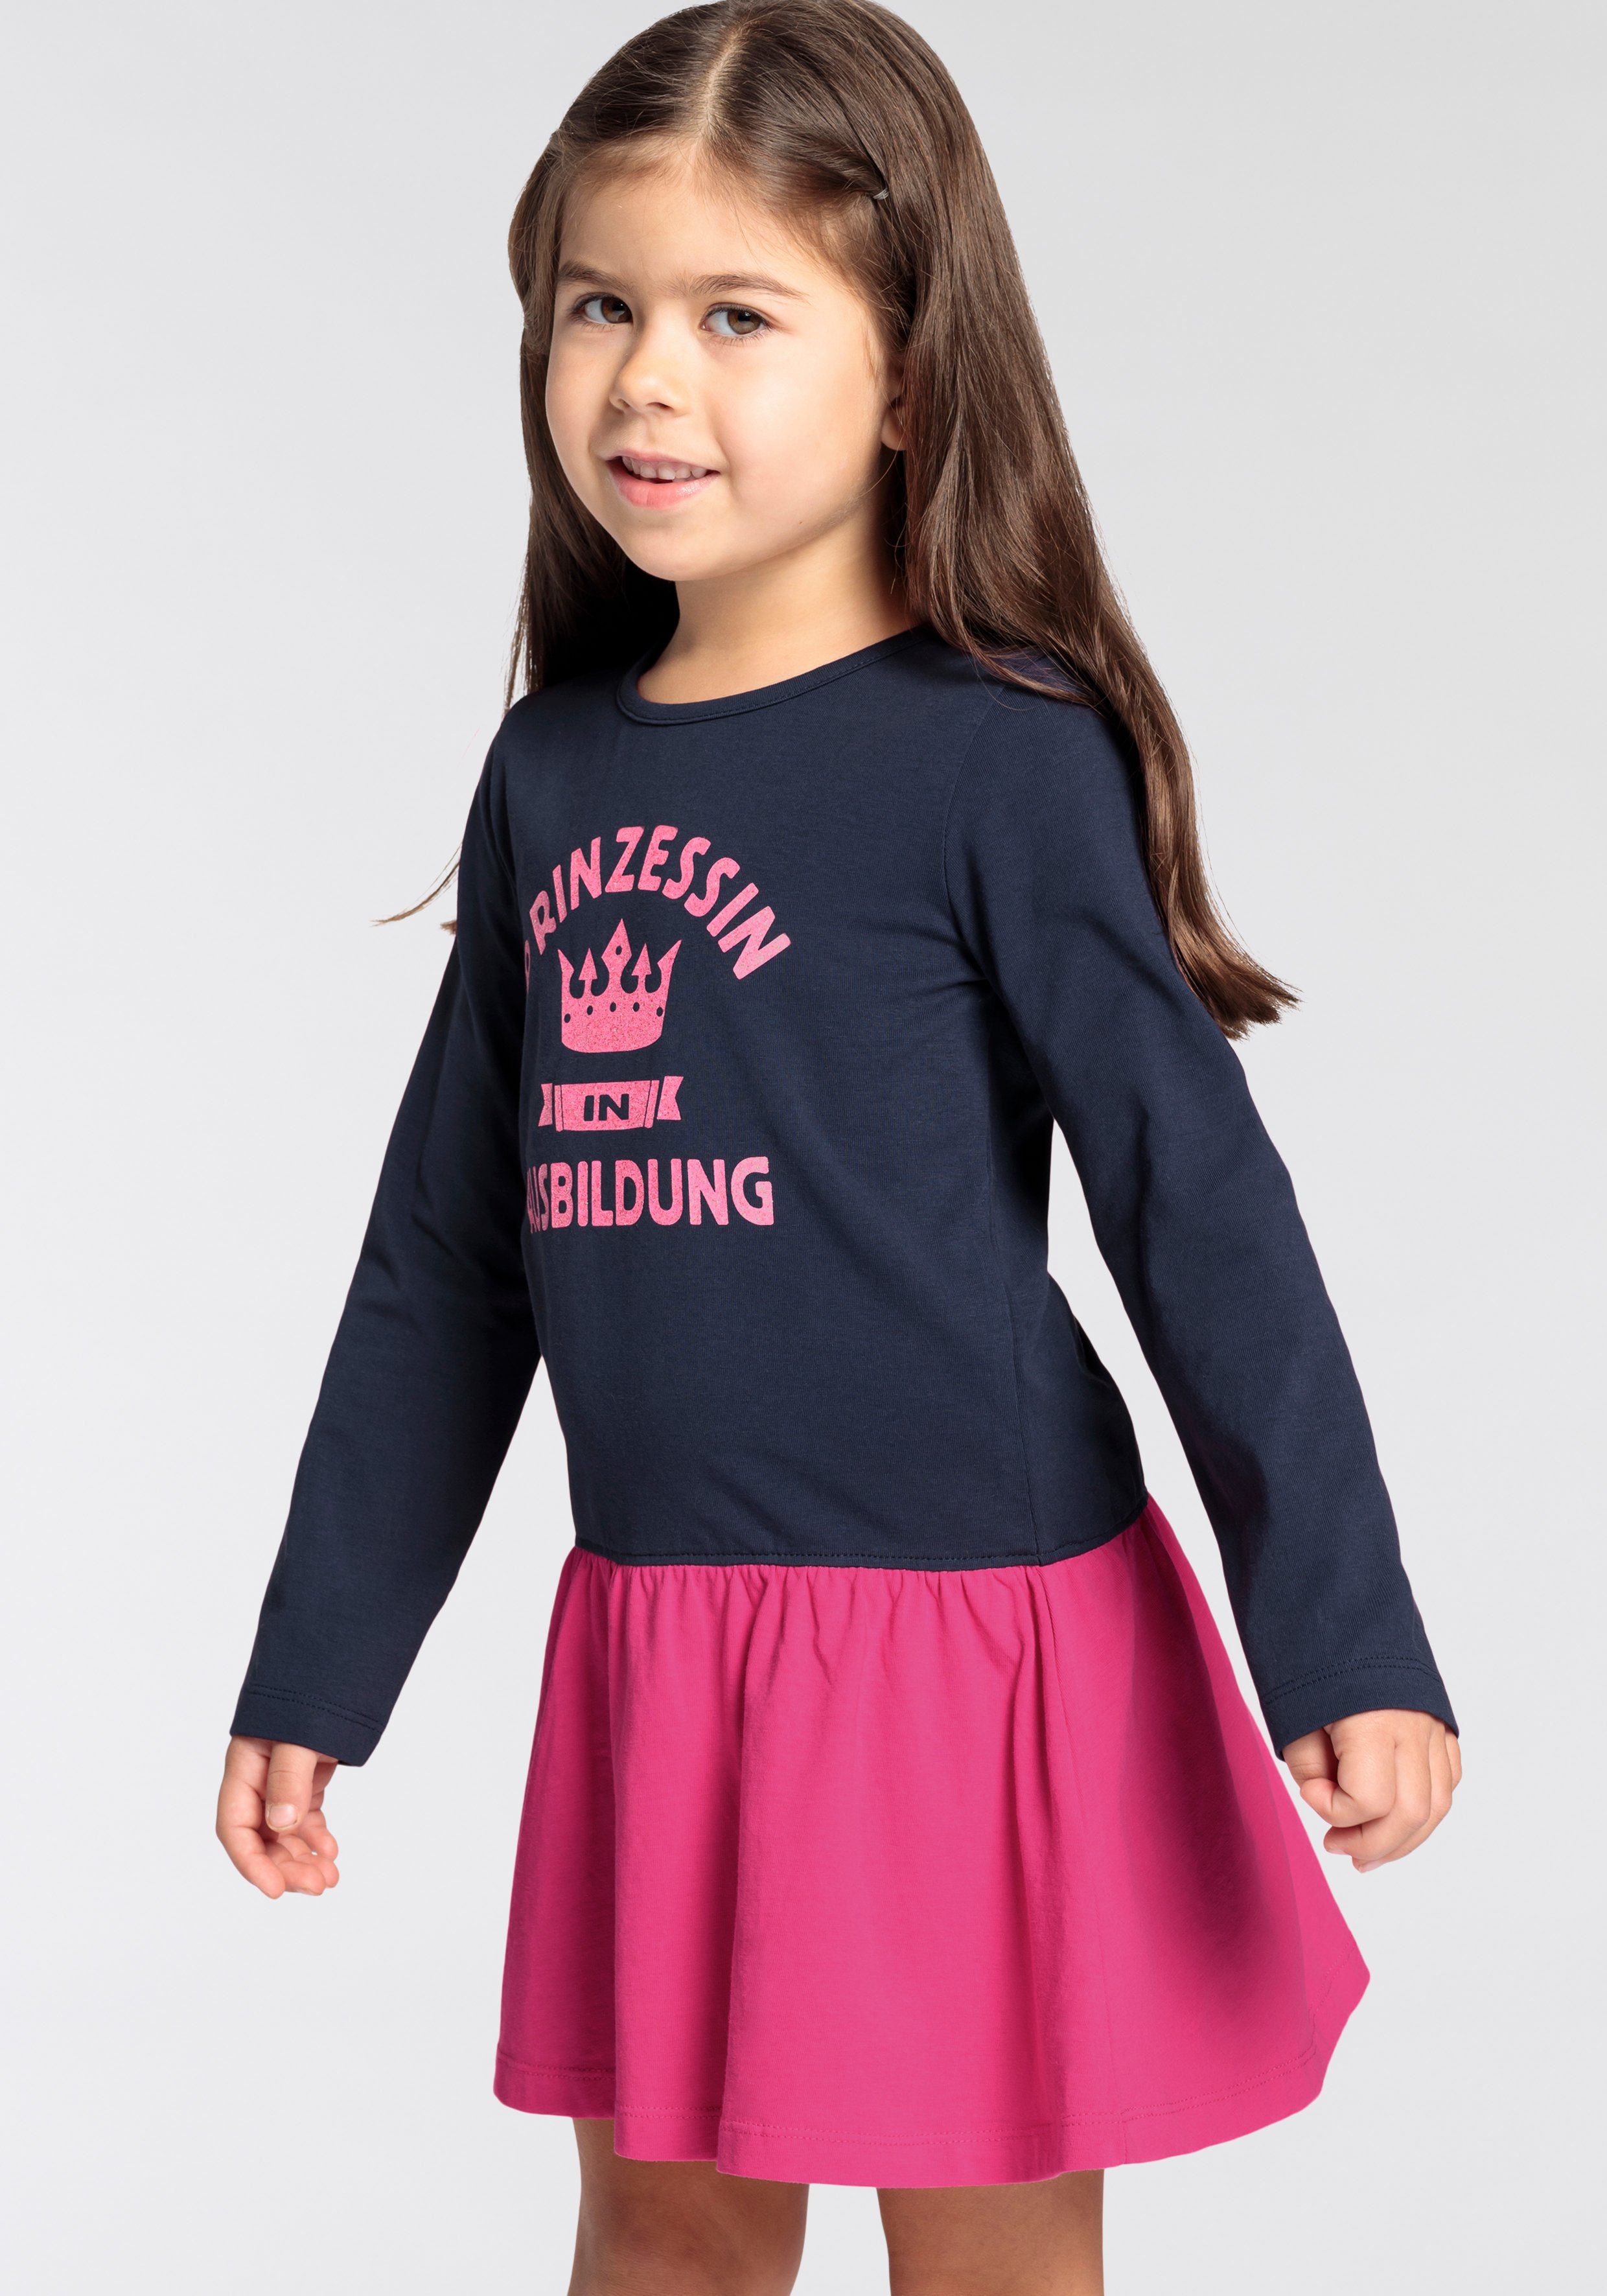 PRINZESSIN Jerseykleid kleine für IN Mädchen AUSBILDUNG, Sprüchedruck KIDSWORLD